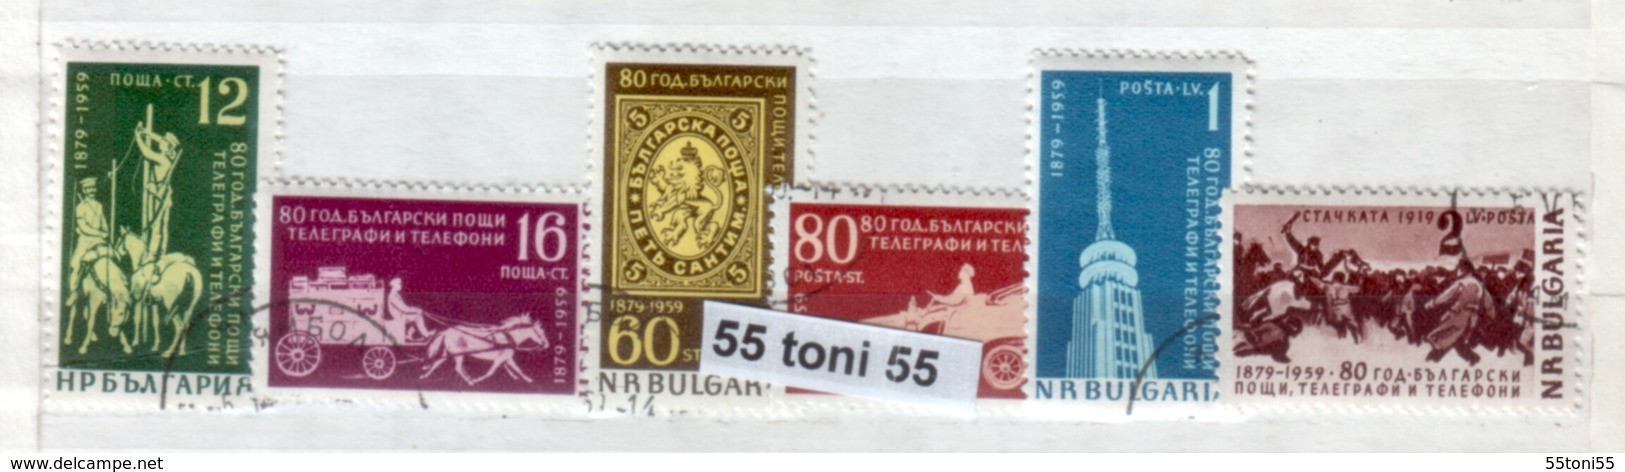 1959 80 Anniversaire De La Poste ( Chevaux - Cavalli) 6v. - Oblitere/used (O)Bulgarien / Bulgaria - Usati